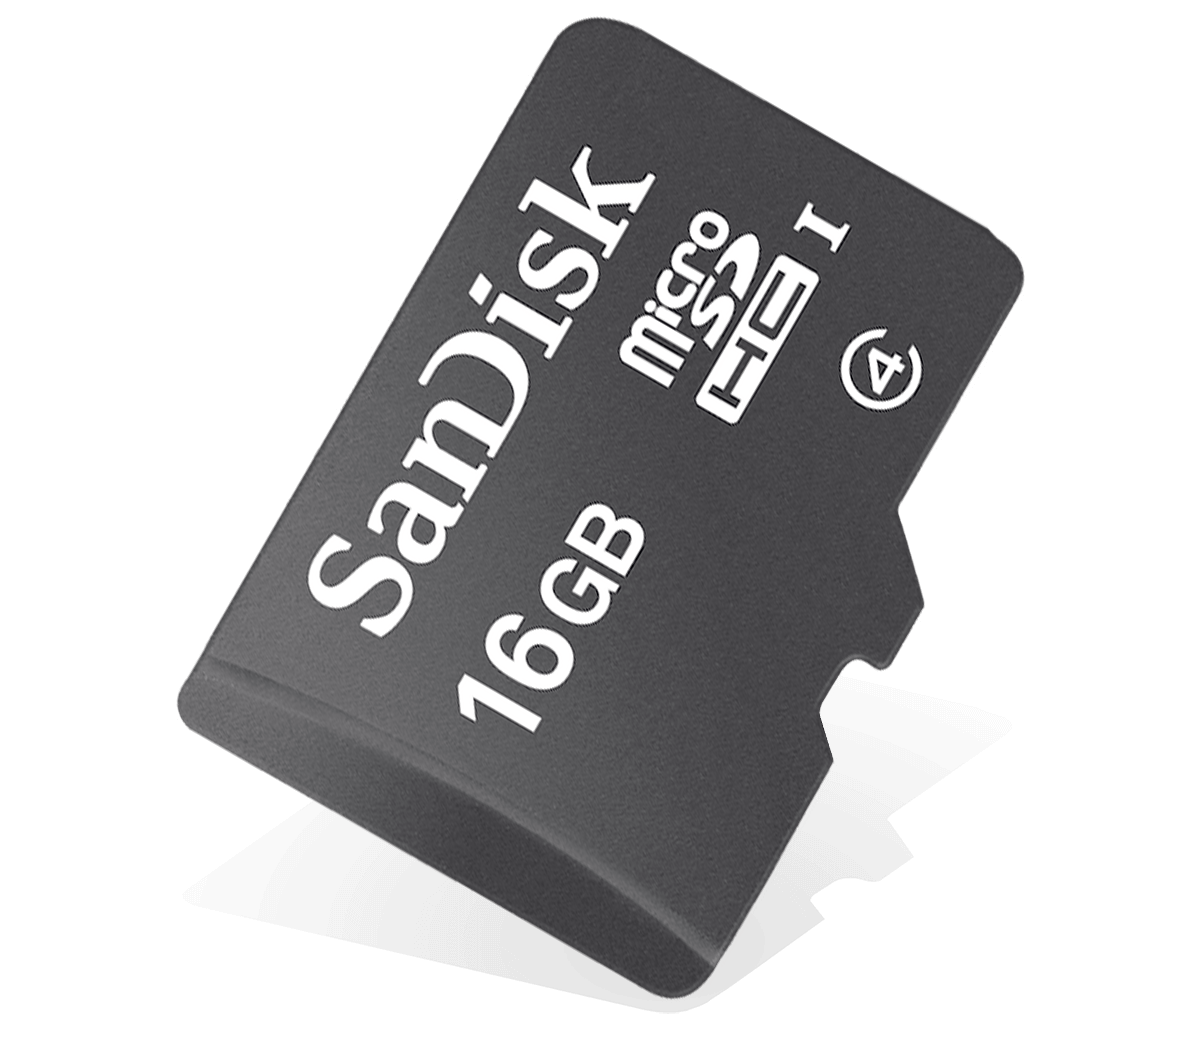 Флешка 32 микро. SD Card 16 GB. Флешка 32 ГБ микро SD. MICROSD 32 GB PNG. Флеш карта 32 ГБ Netac MICROSD.